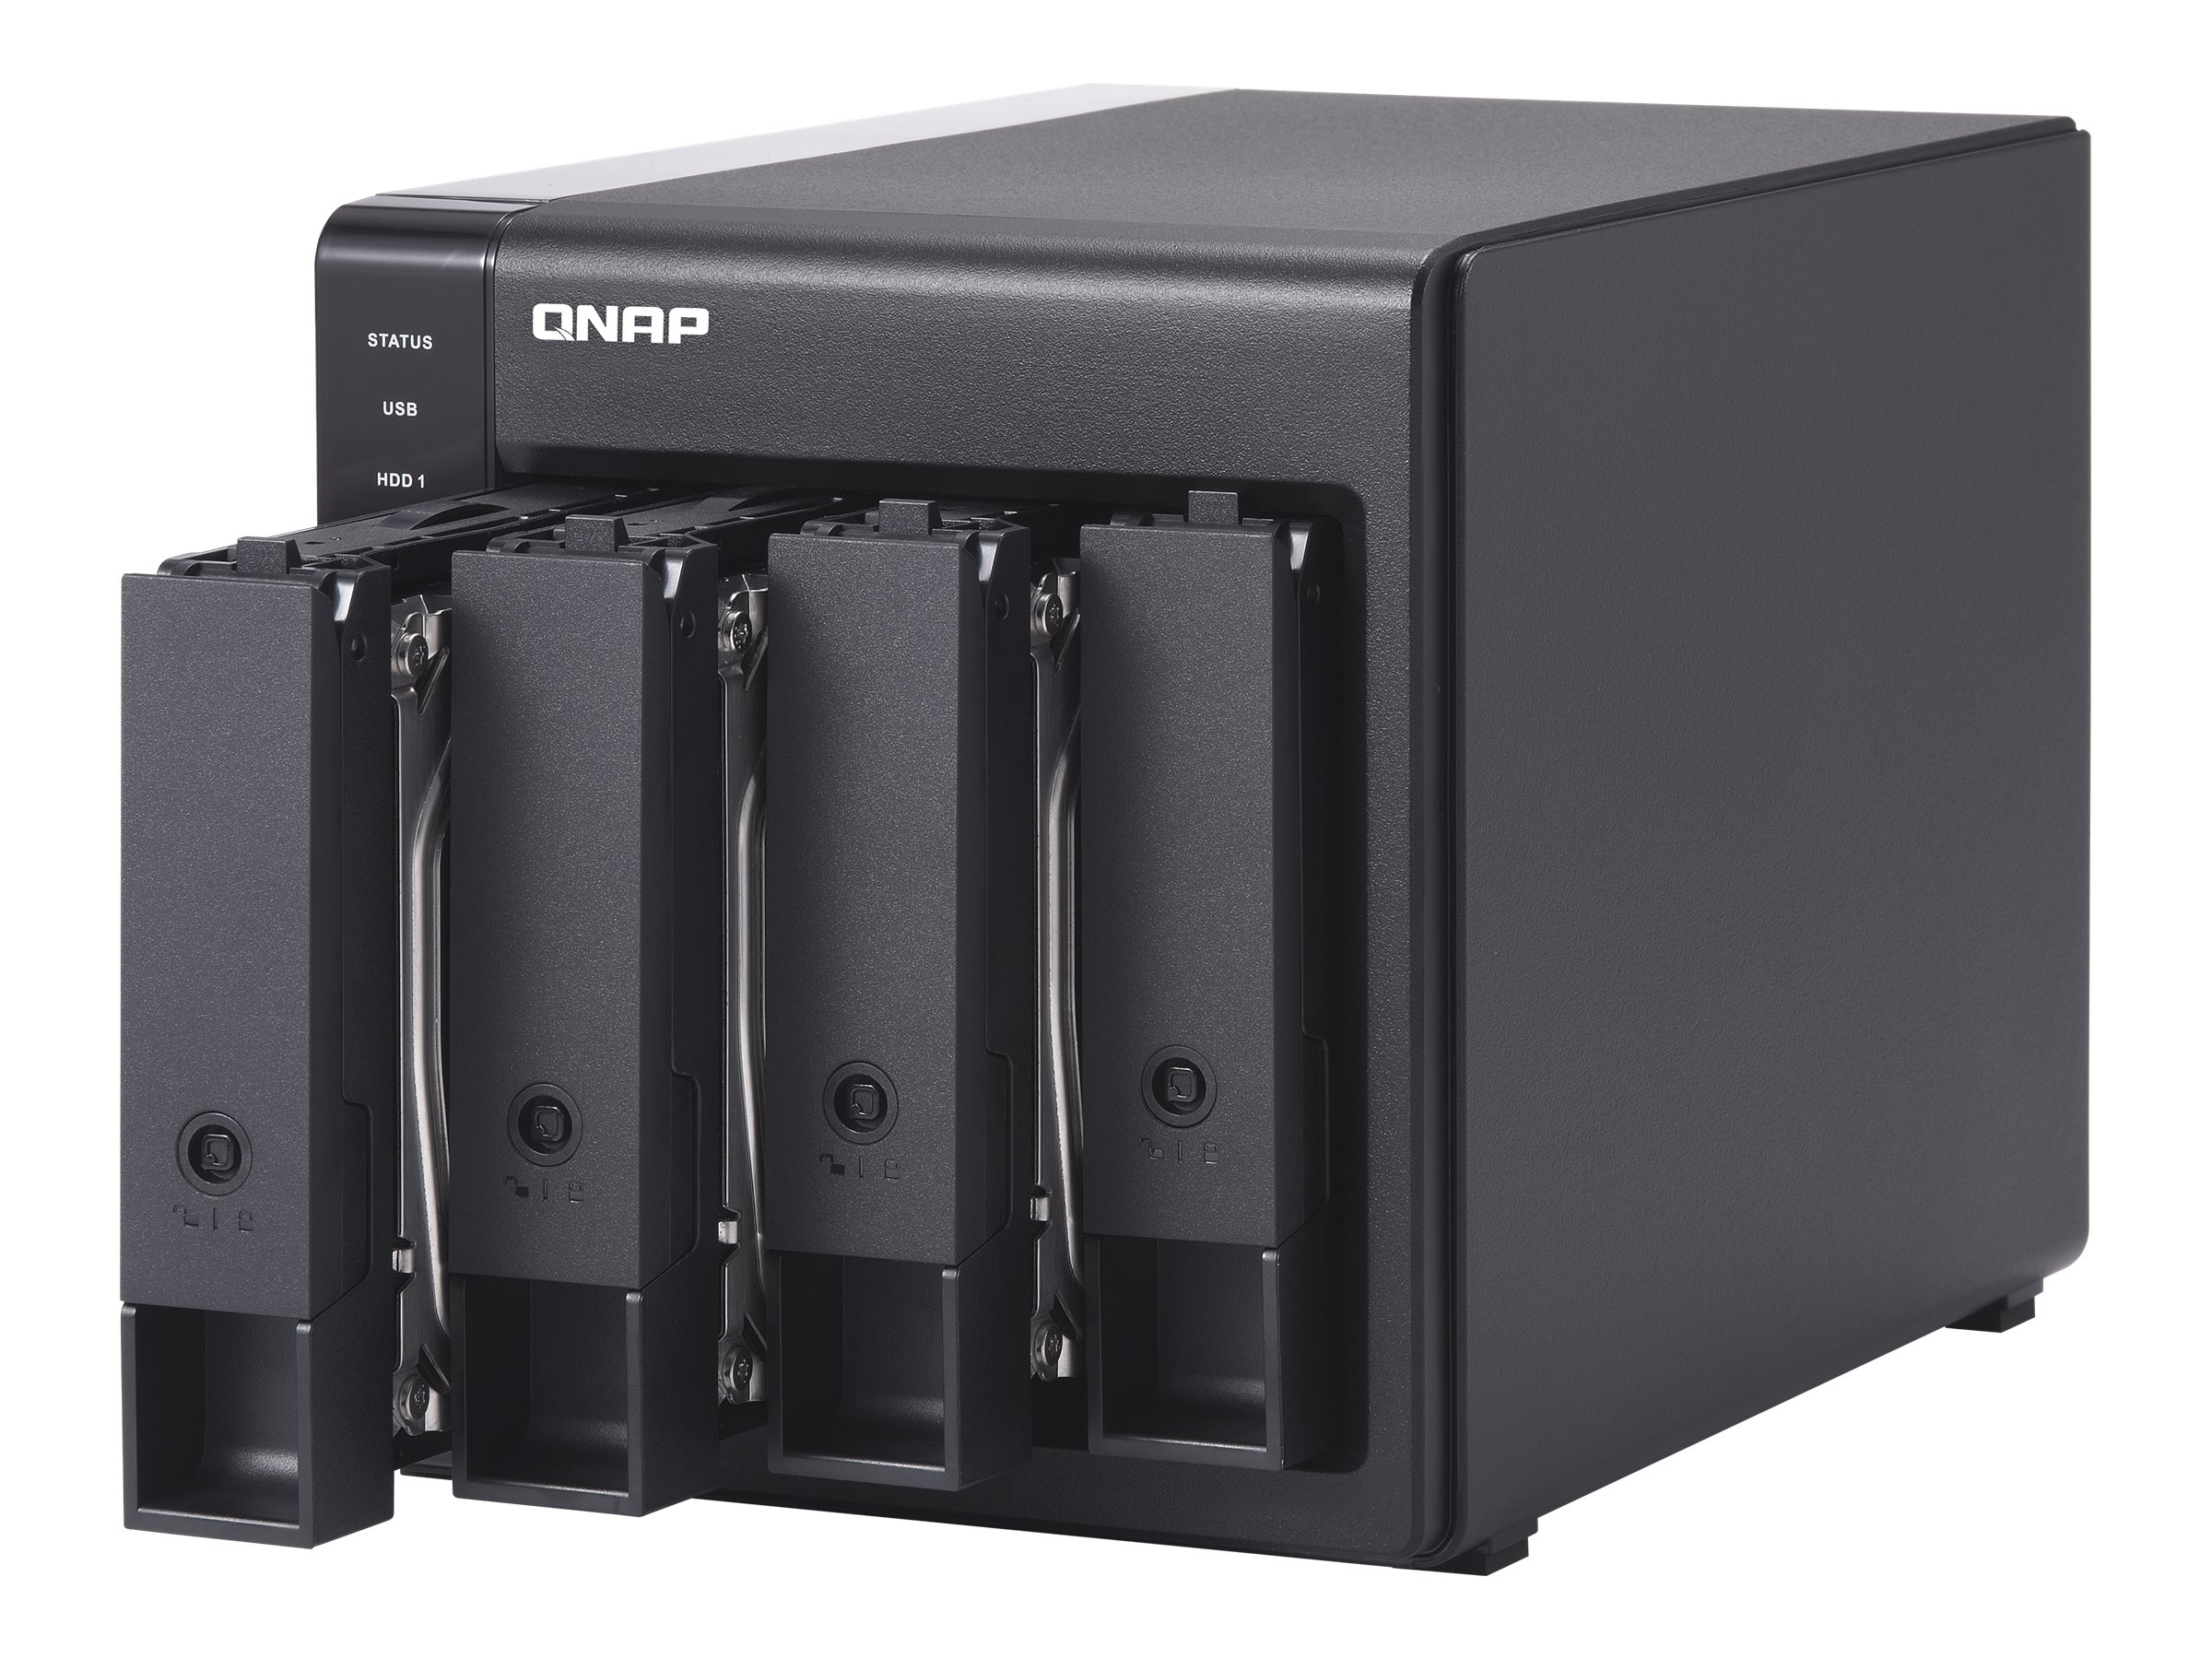 QNAP TR-004 - Hard drive array